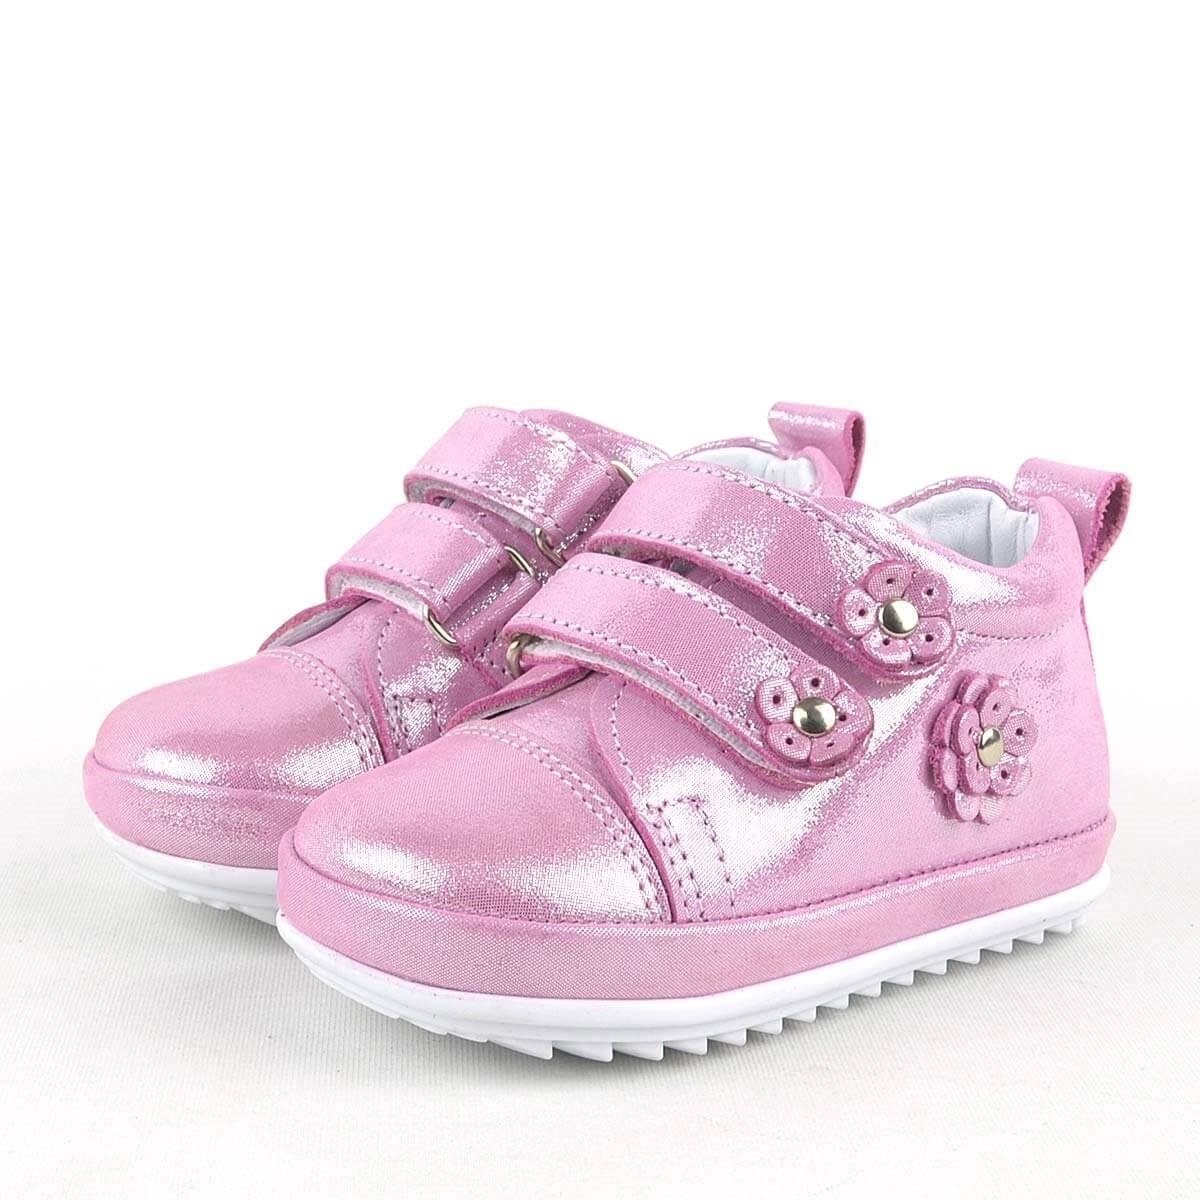 Rakerplus Hakiki Deri Pembe Anatomik Kız Bebek İlk Adım Ayakkabısı R411-P-S